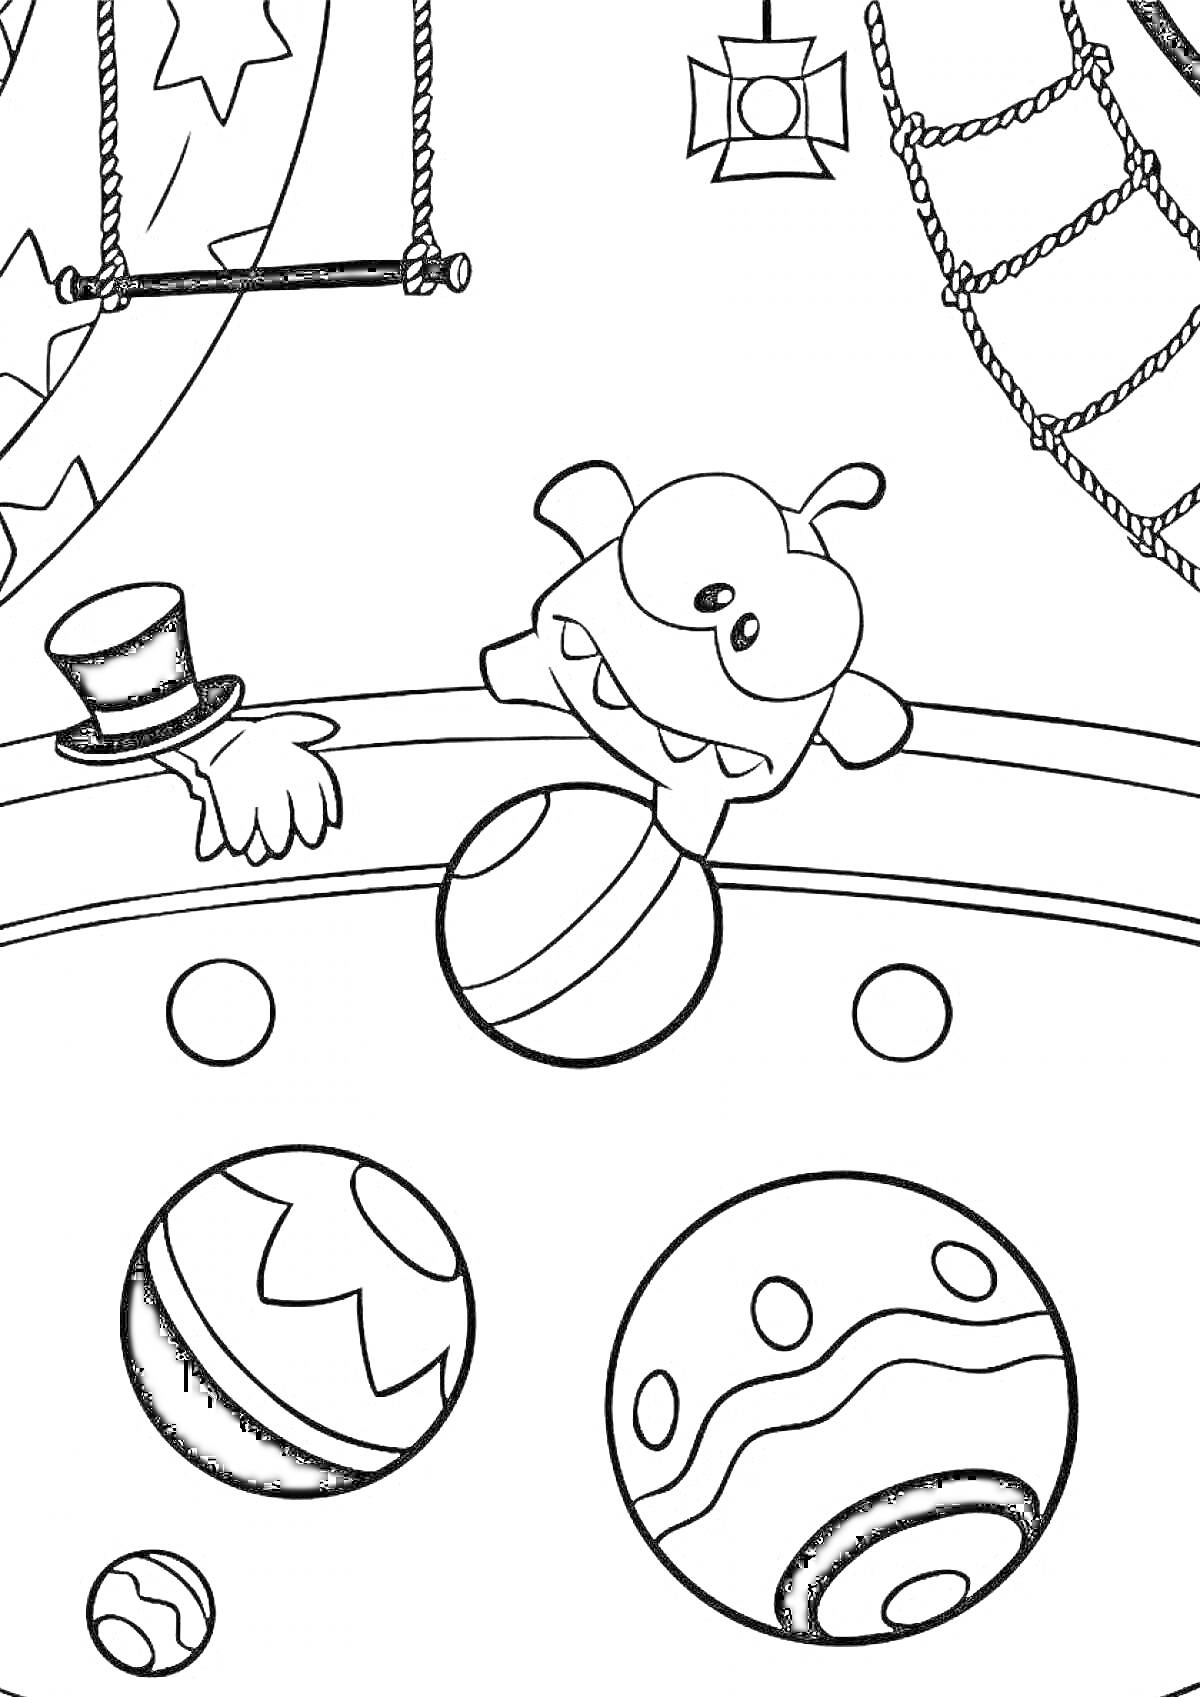 Раскраска Монстрик с игрушечными мячиками в цирке